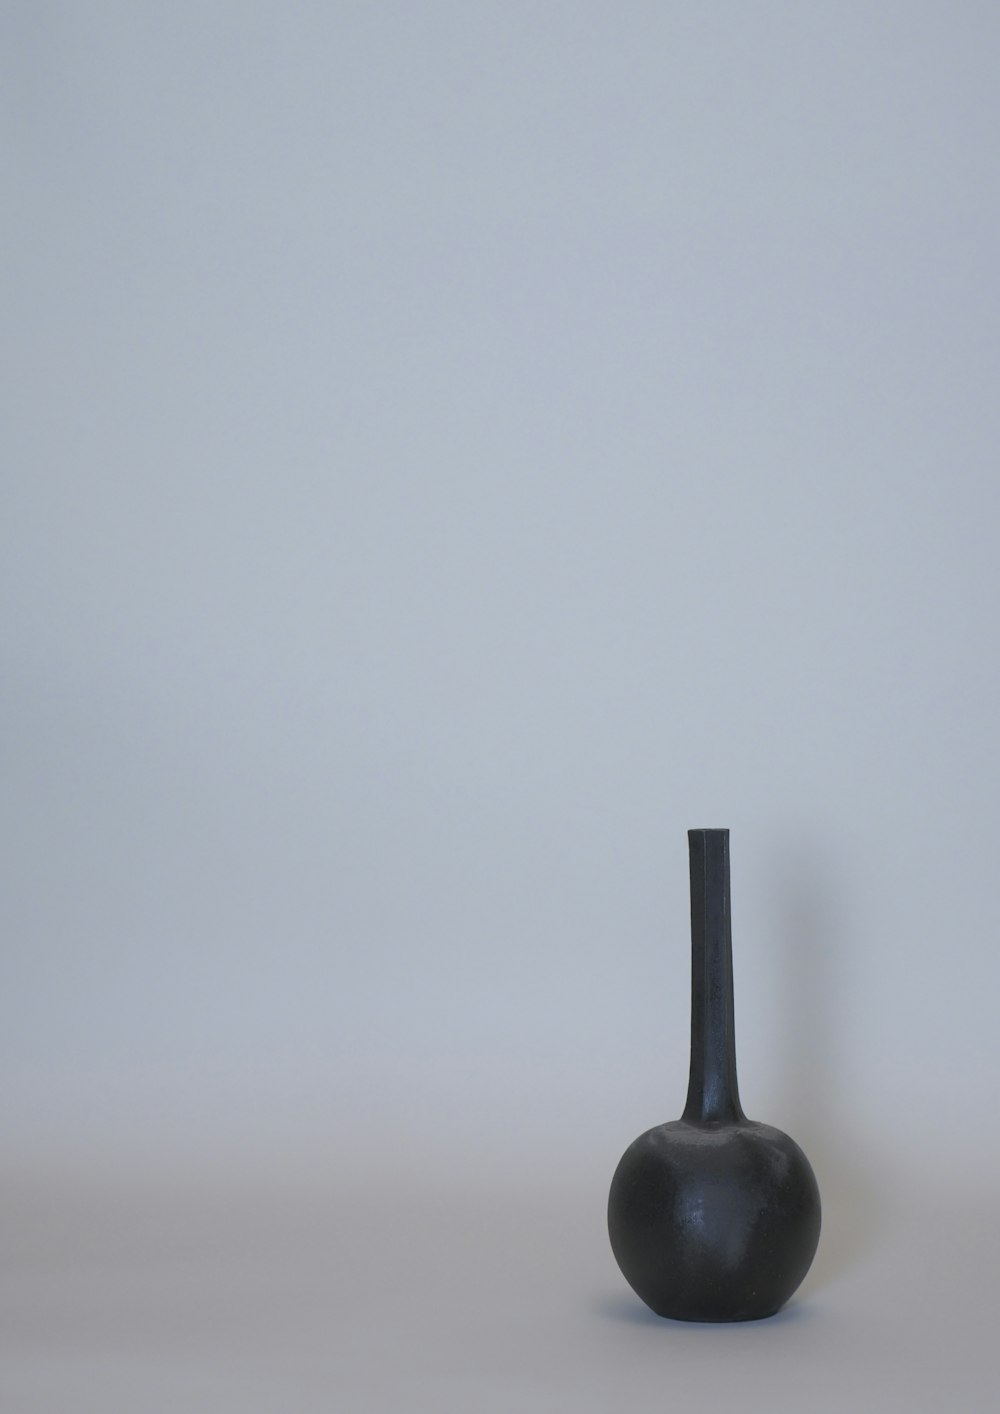 black ceramic vase on white table